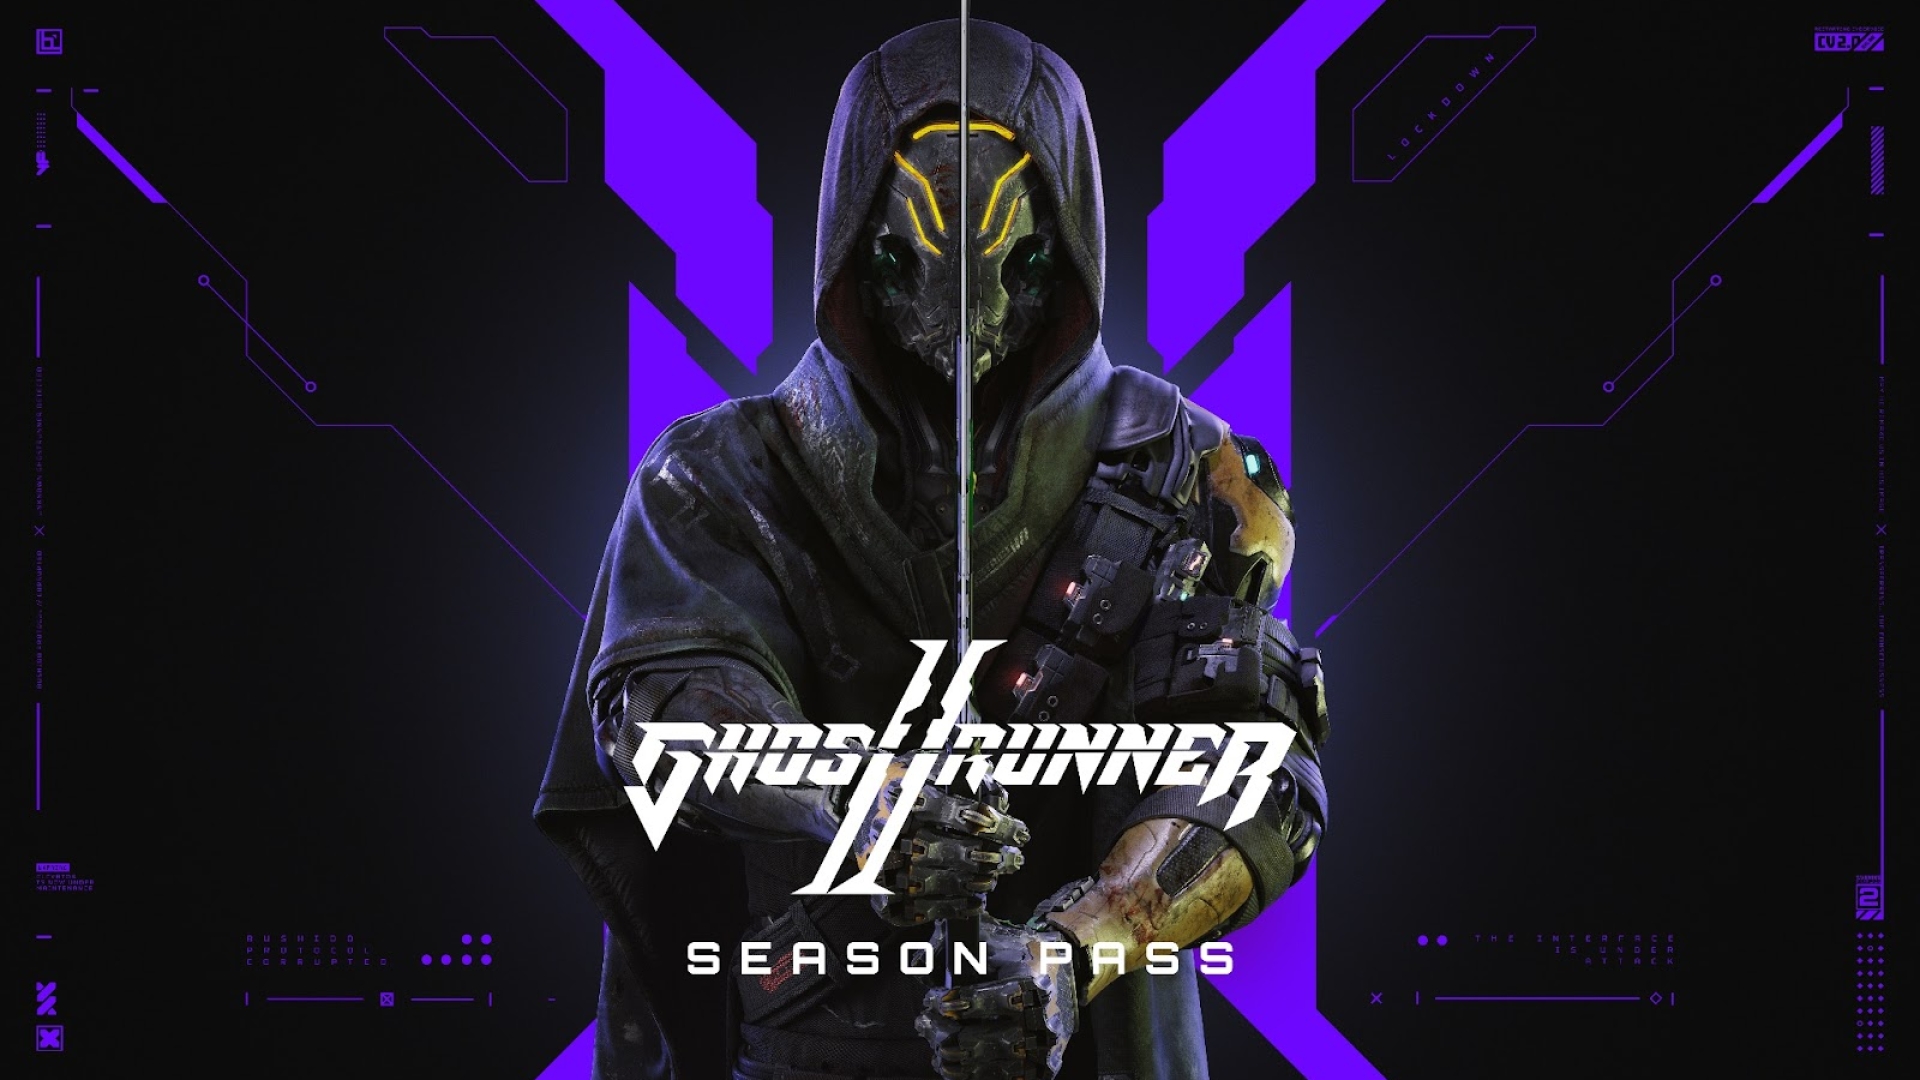 Ghostrunner 2 si arricchisce con la nuova modalità Hardcore gratuita e un DLC estetico